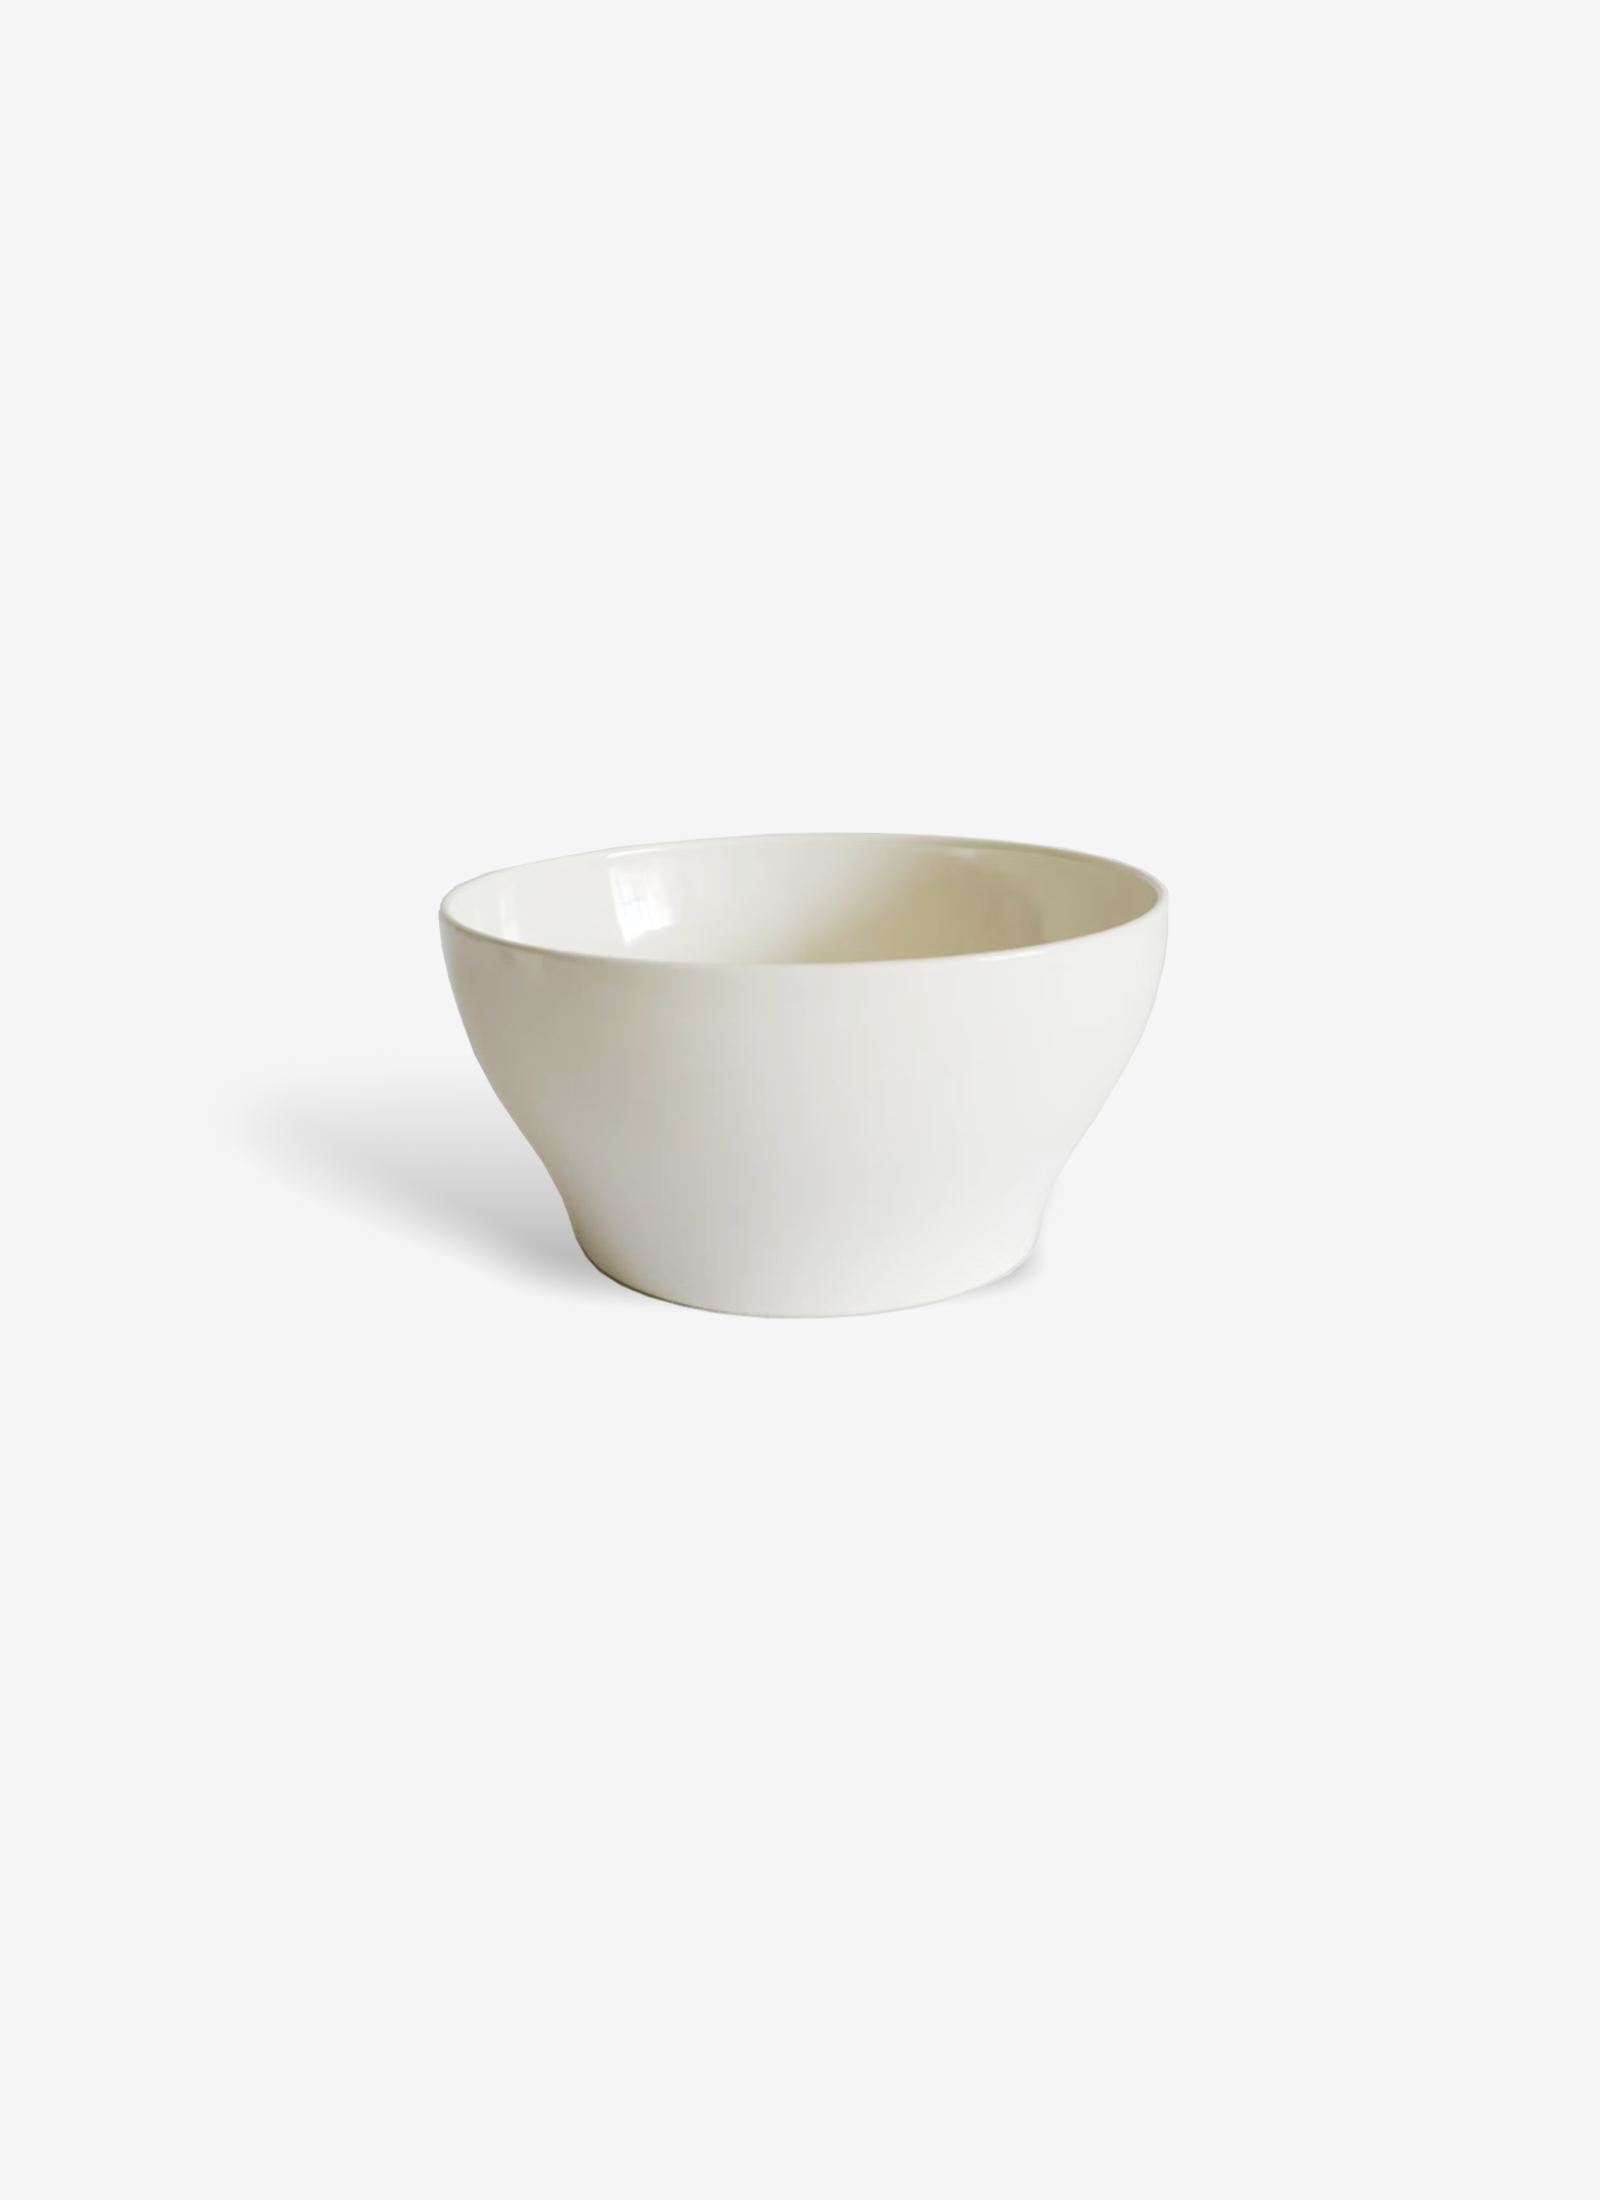 Ceramic Bowl by John Pawson - Large